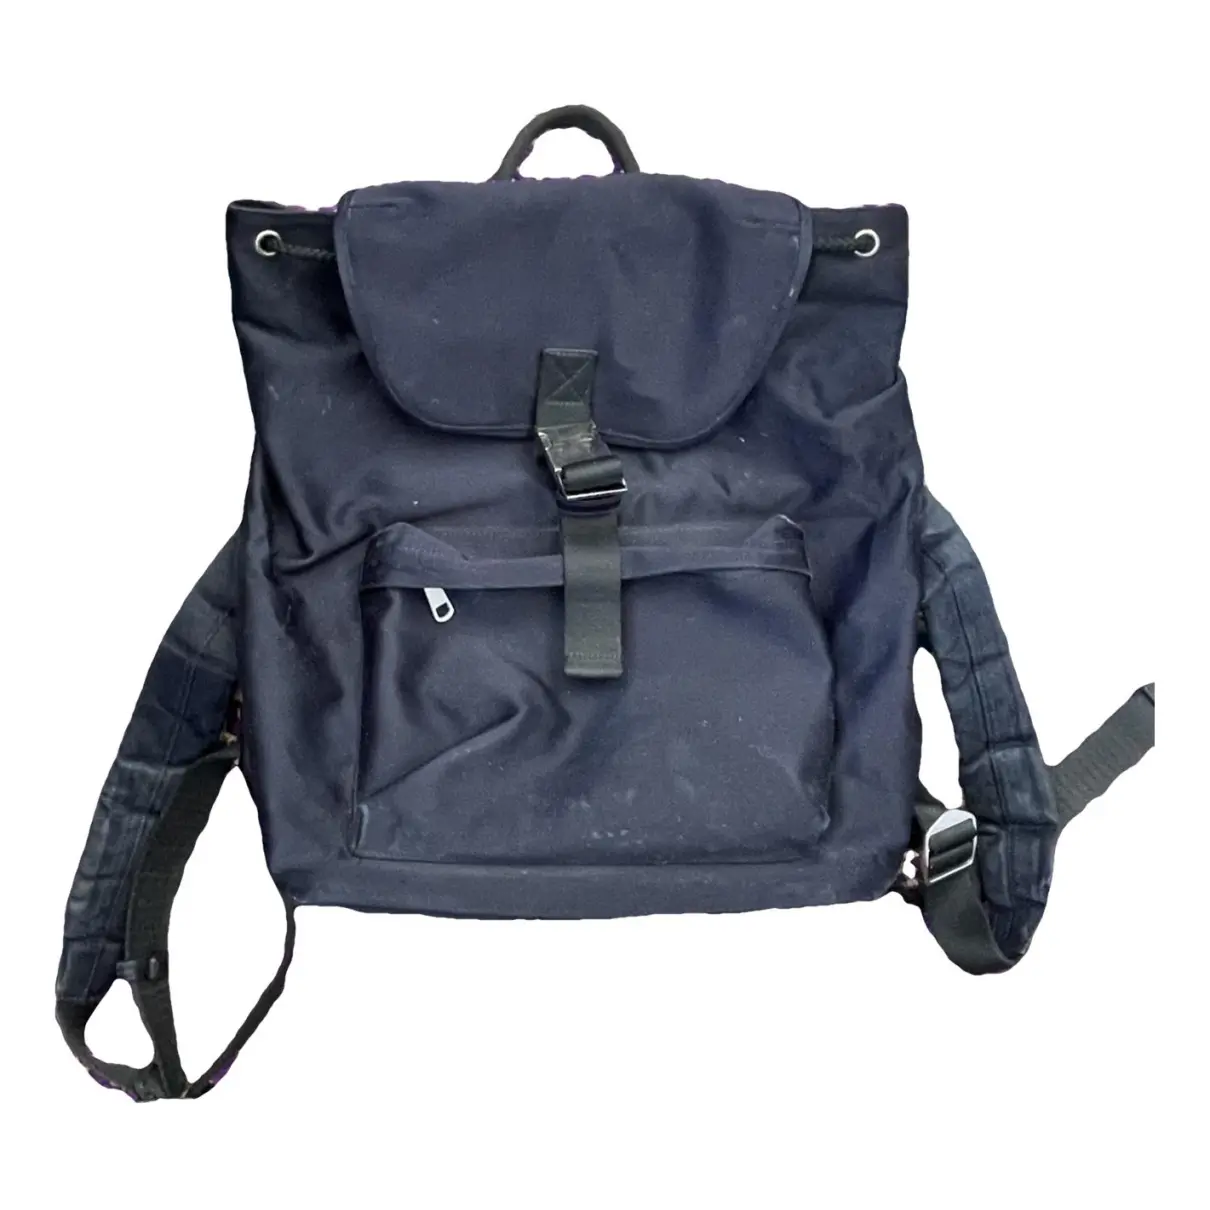 Demi-lune cloth backpack